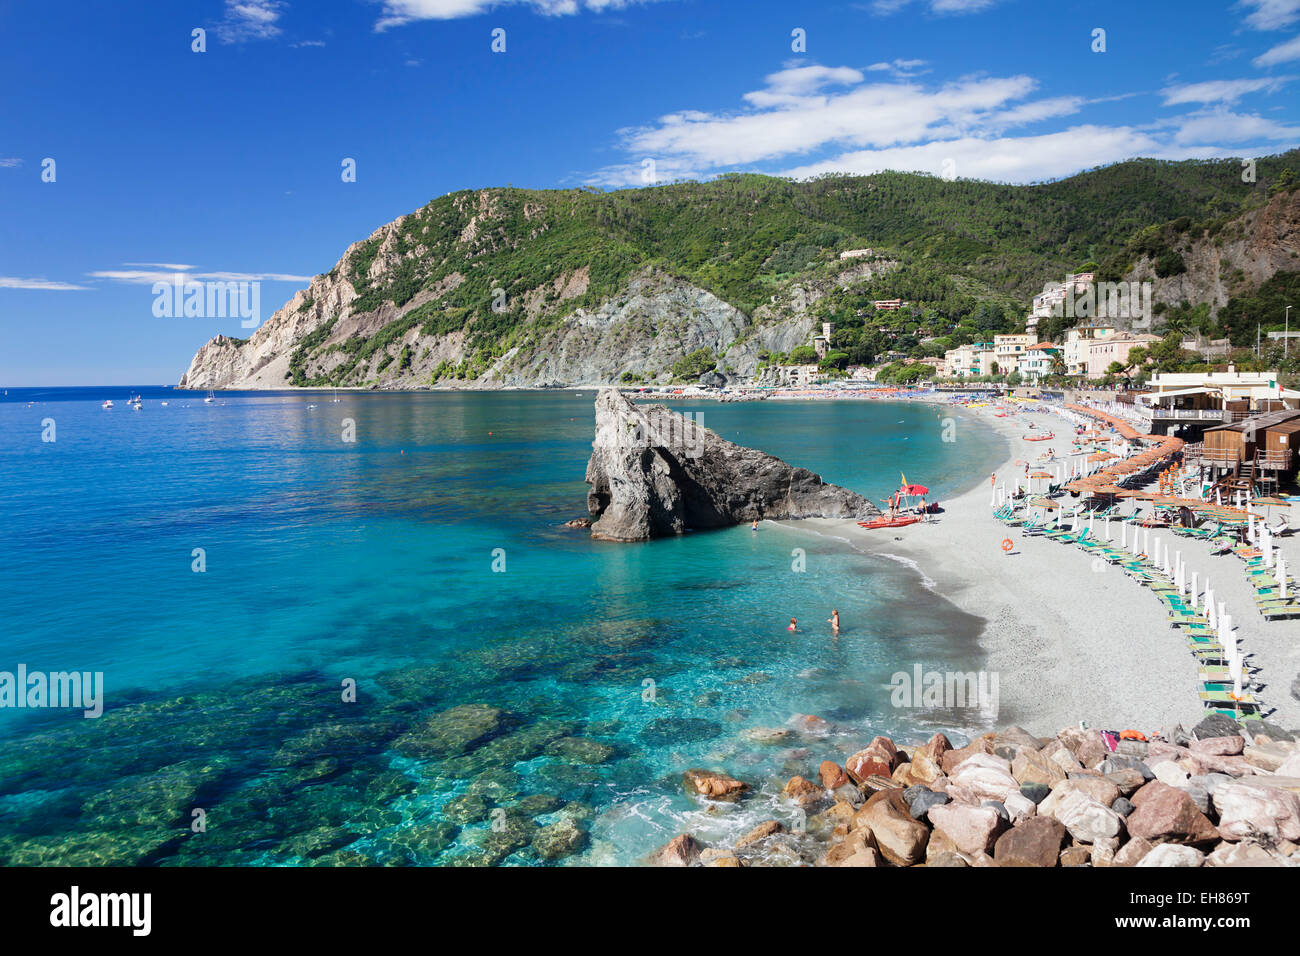 Spiaggia con ombrelloni e sedie a sdraio, Monterosso al Mare, Cinque Terre Riviera di Levante, UNESCO, Liguria, Italia Foto Stock